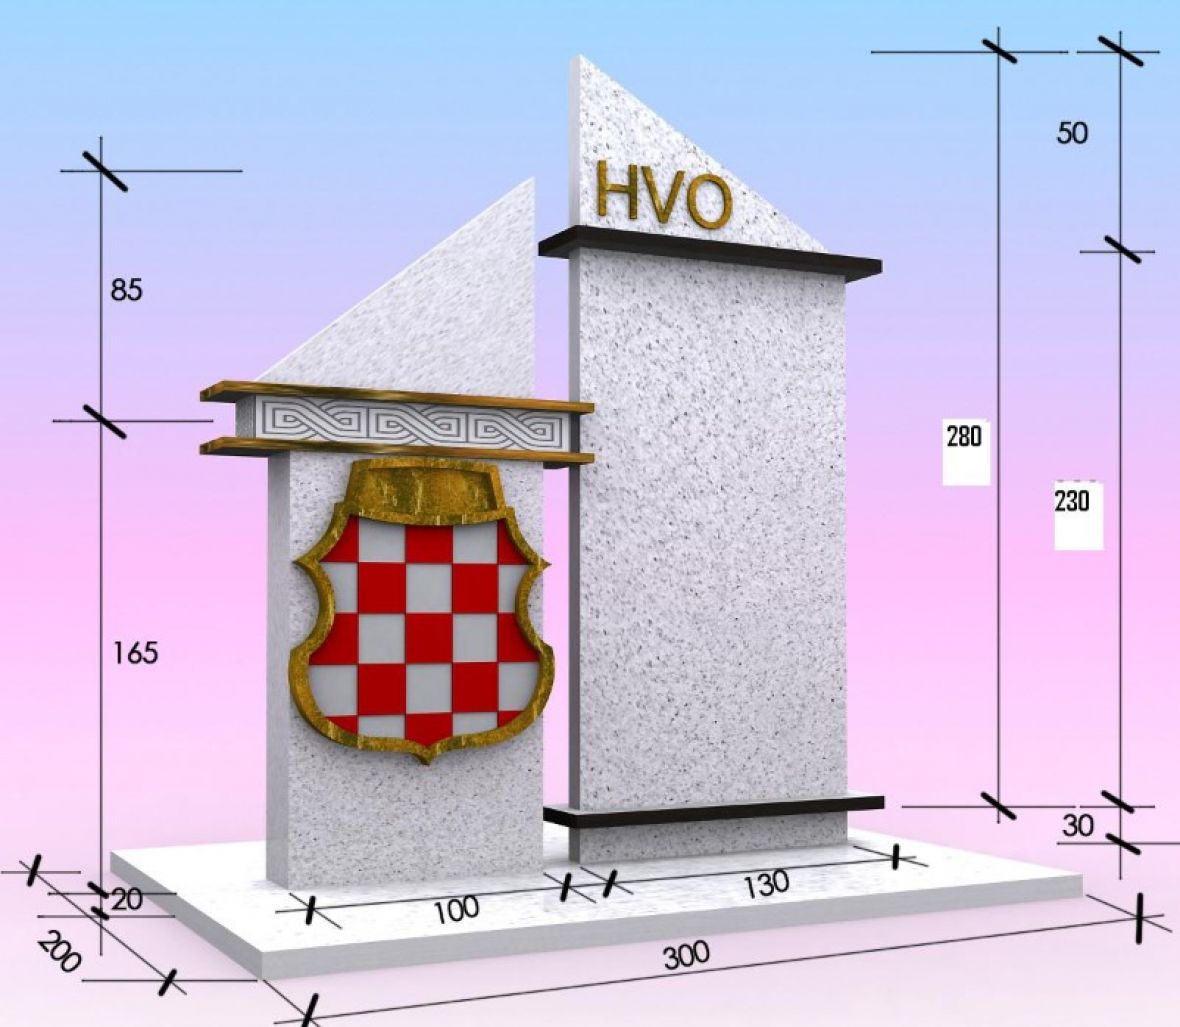 Prijedlog izgleda spomenika koji zastupa Koordinaciji udruga HVO-a Sarajevo - undefined